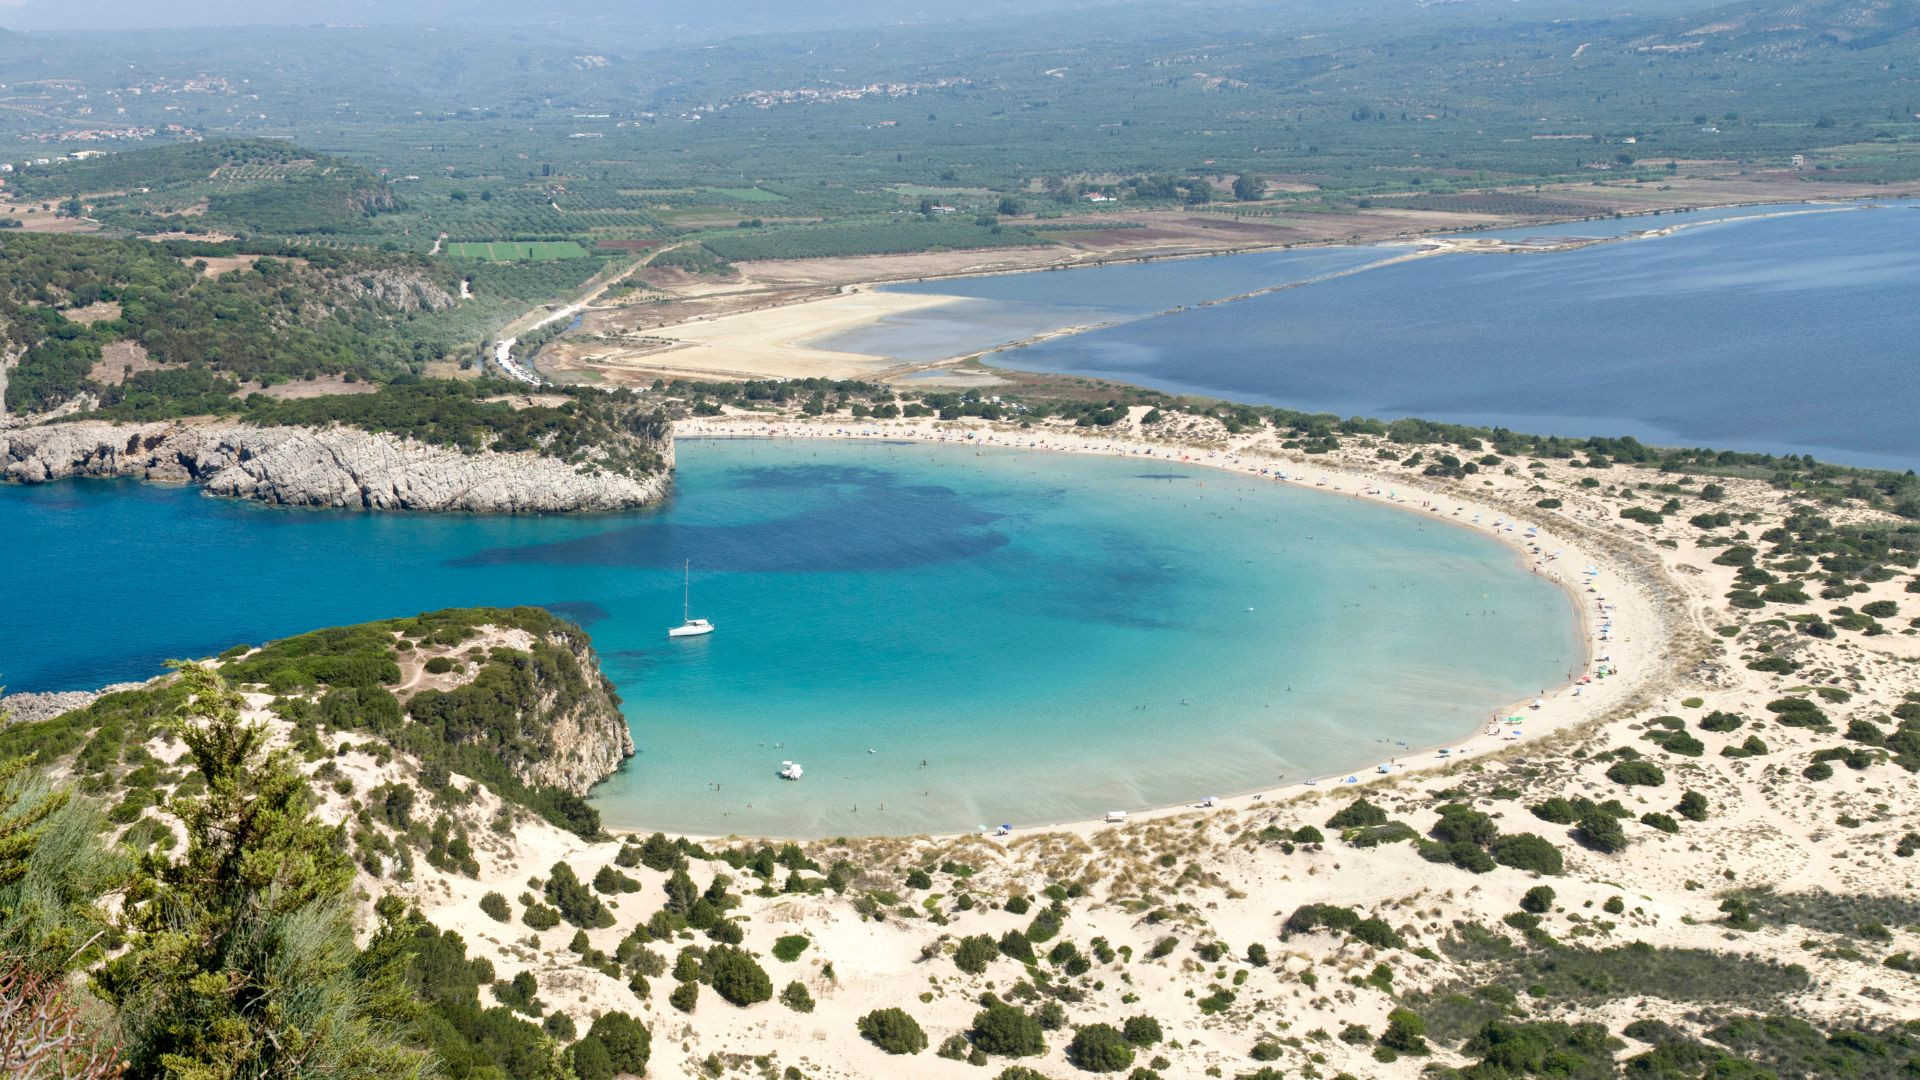 Voidokoilia Beach_Peloponnese